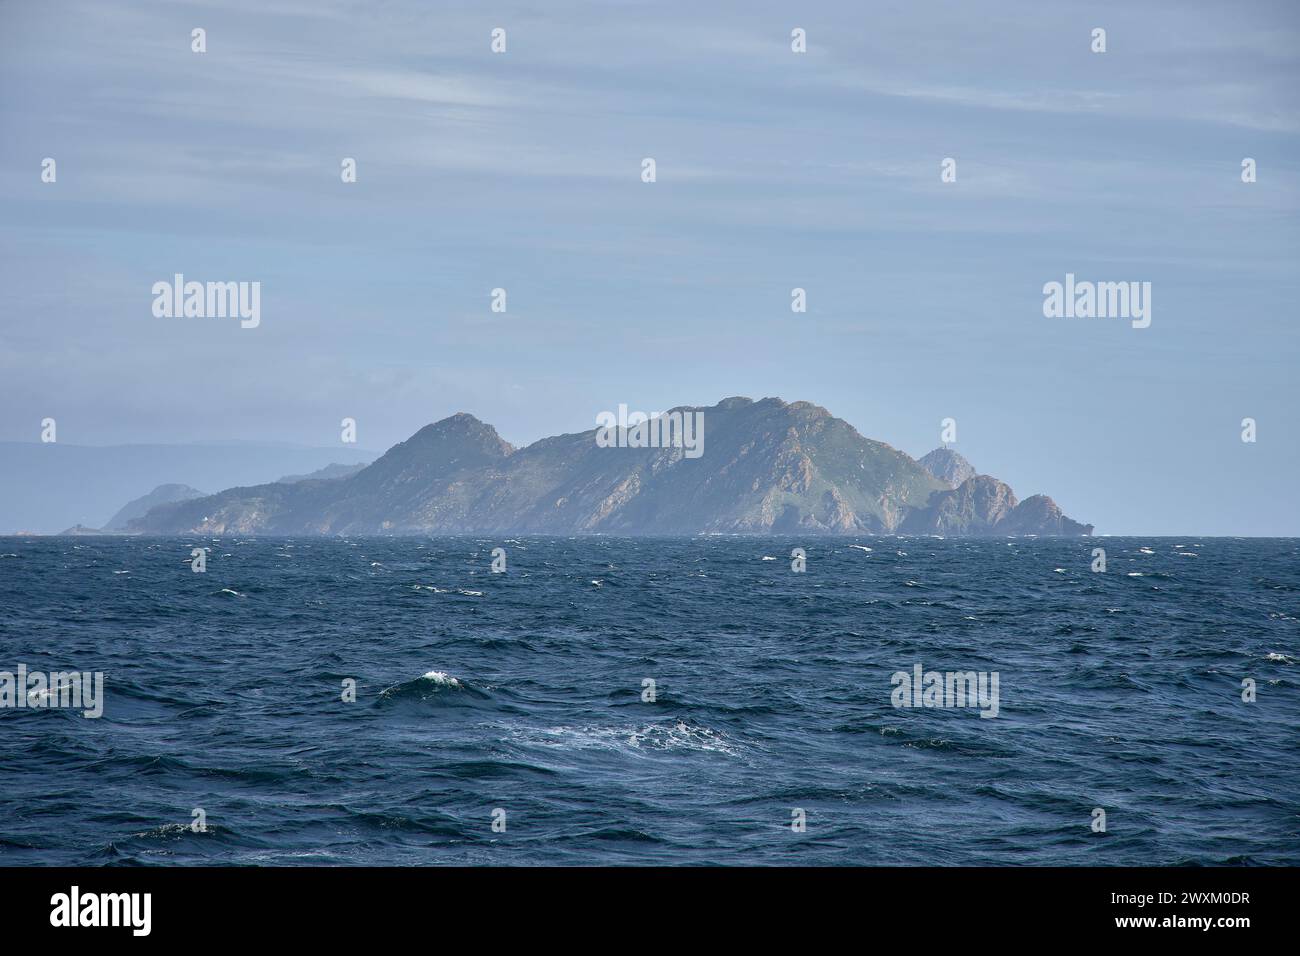 Felsen von Monteagudo Island. Der Archipel der Cys-Inseln vor der Küste von pontevedra in galicien, spanien an der Mündung der ria de vigo. Blick von vorne Stockfoto